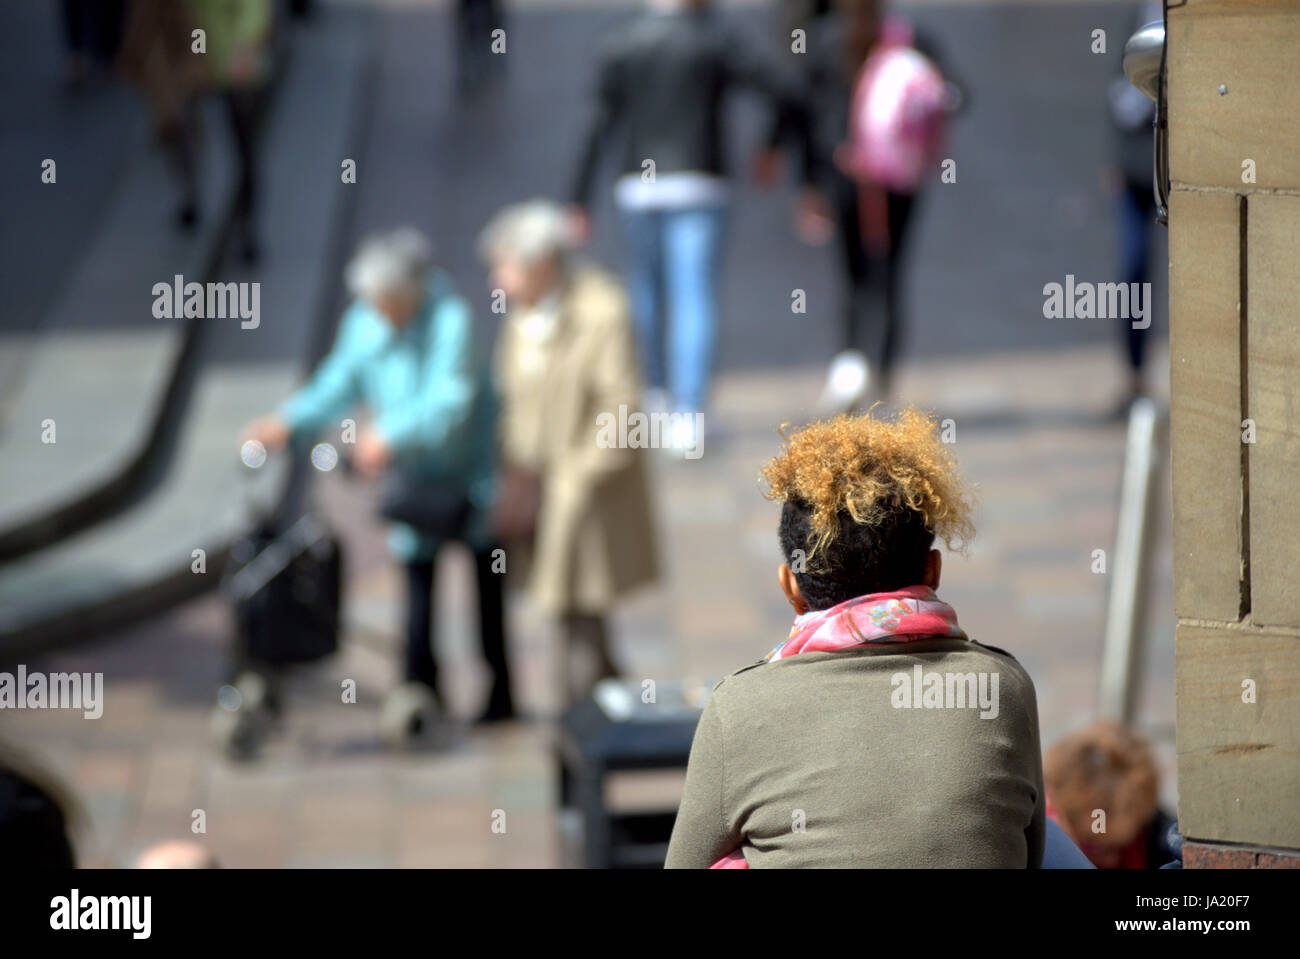 Los jóvenes contemplando la edad joven mirando a ciudadanos de la tercera edad con zimmer frame Foto de stock